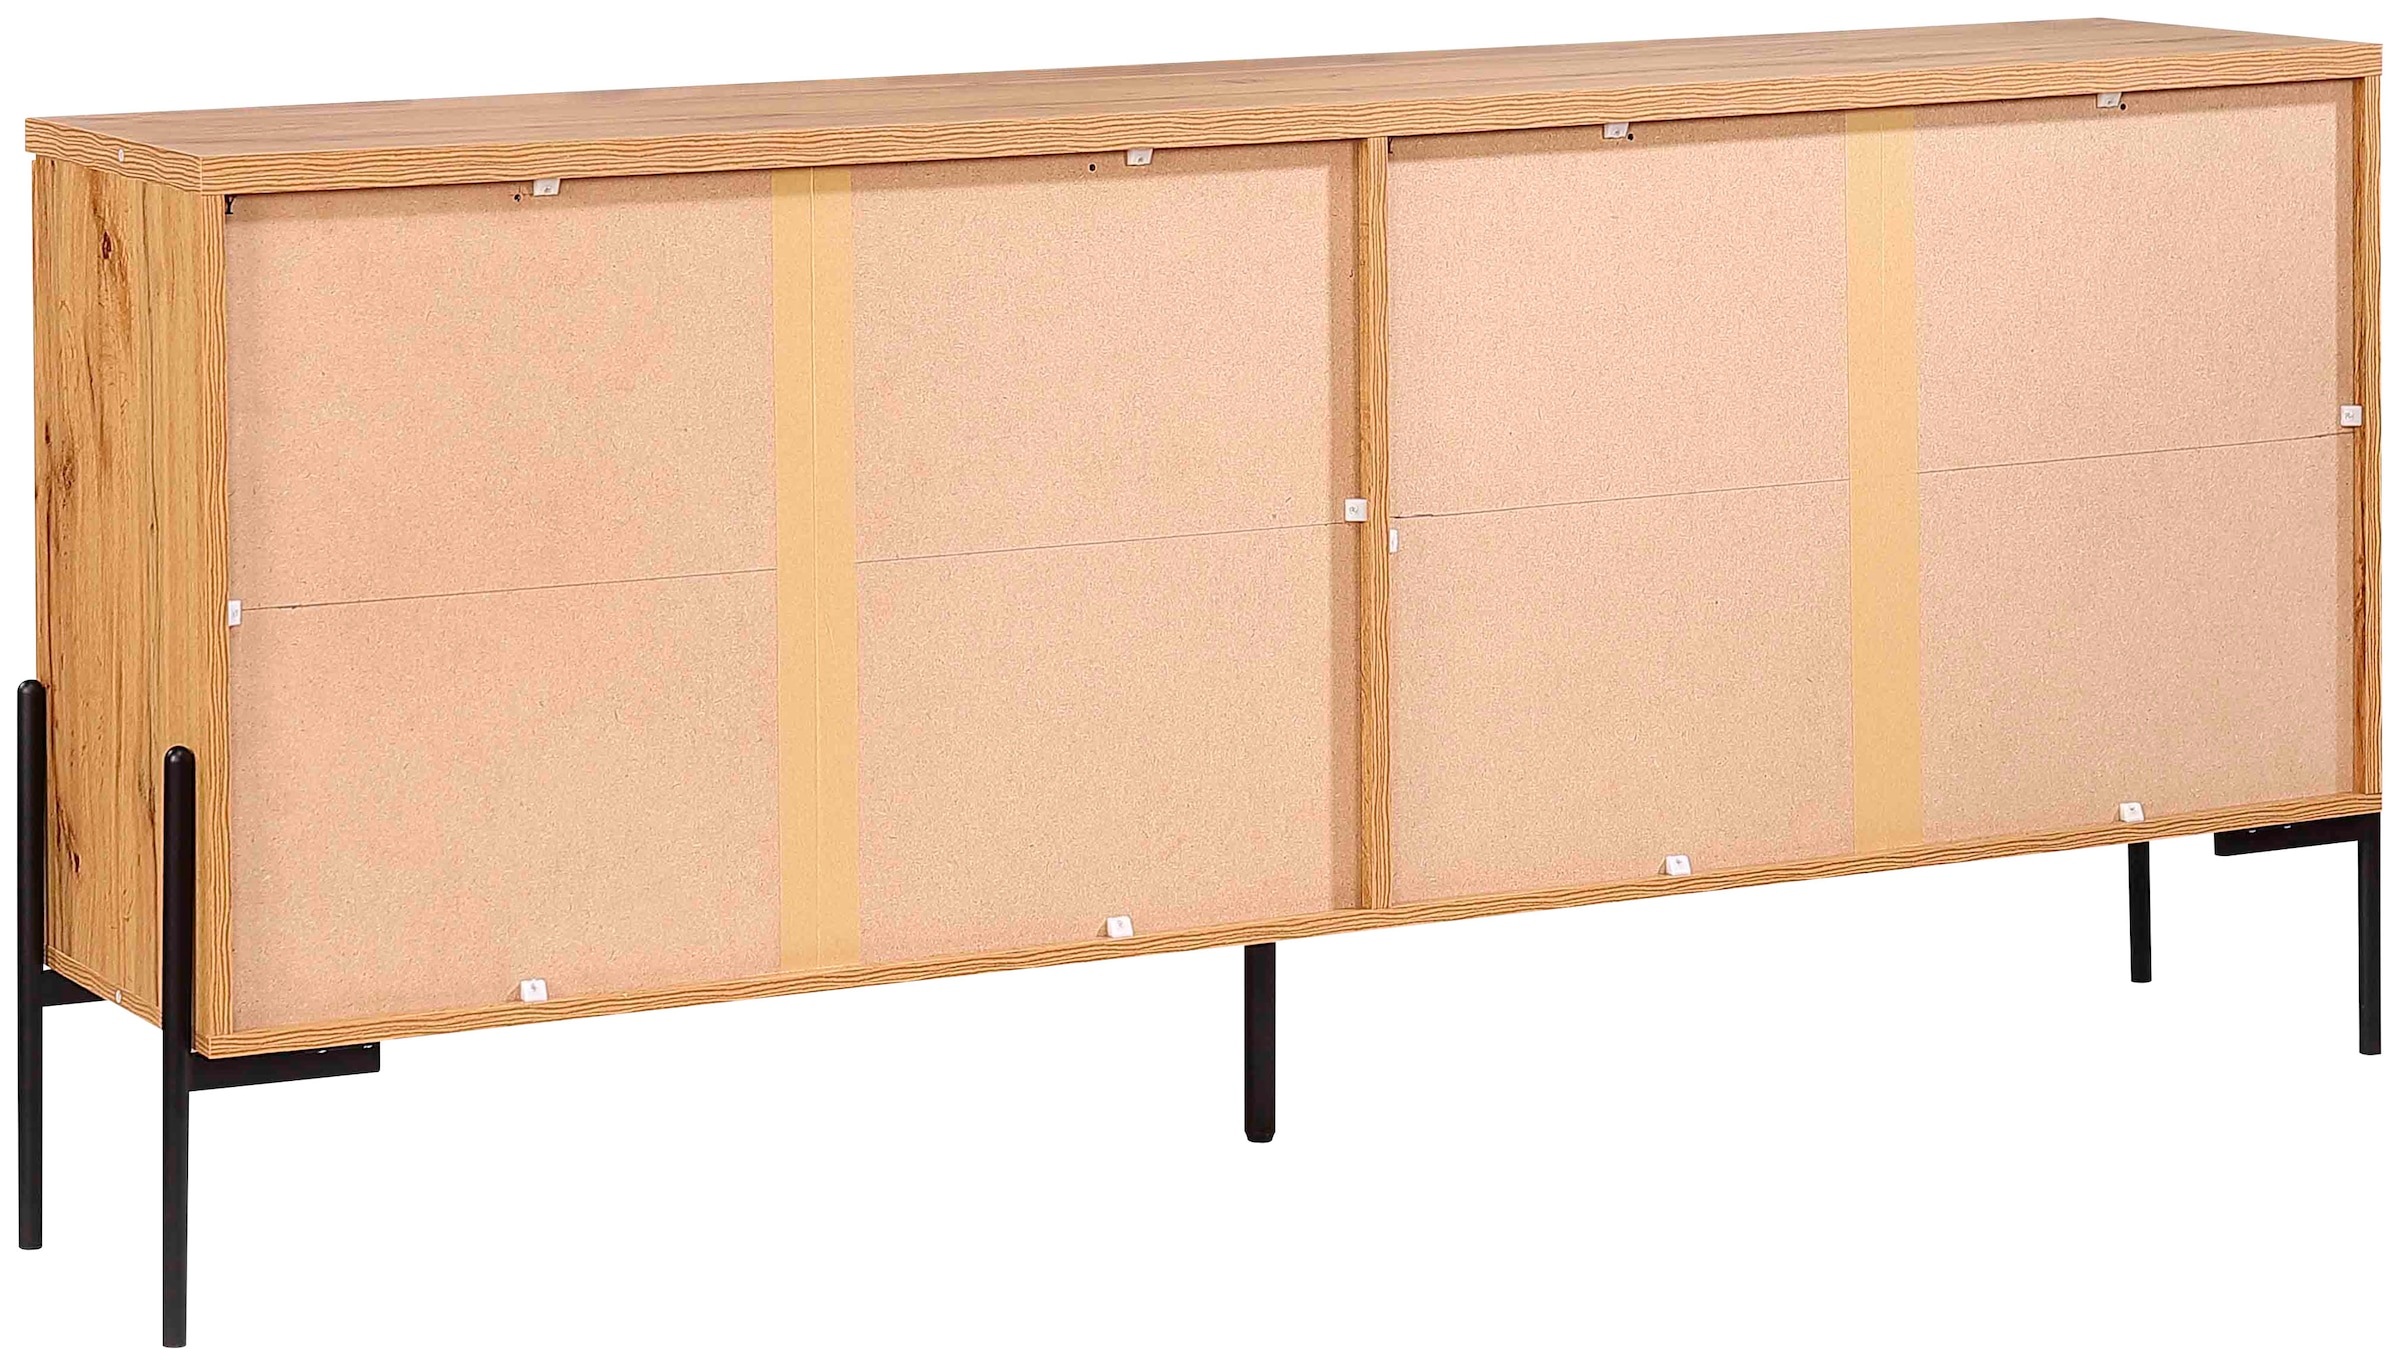 Home affaire Sideboard »Valloire«, 2 feste Einlegeböden, Push-to-open Funktion, Breite 178 cm, Höhe 80 cm